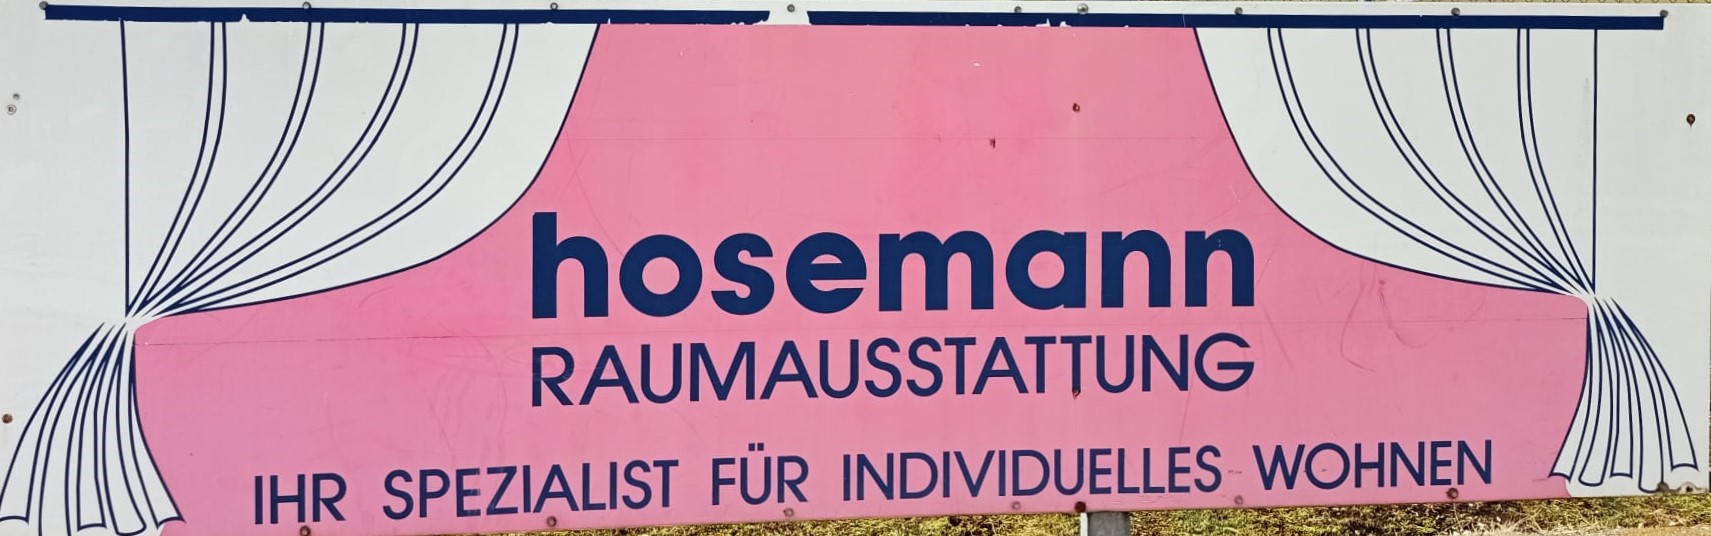 hosemann